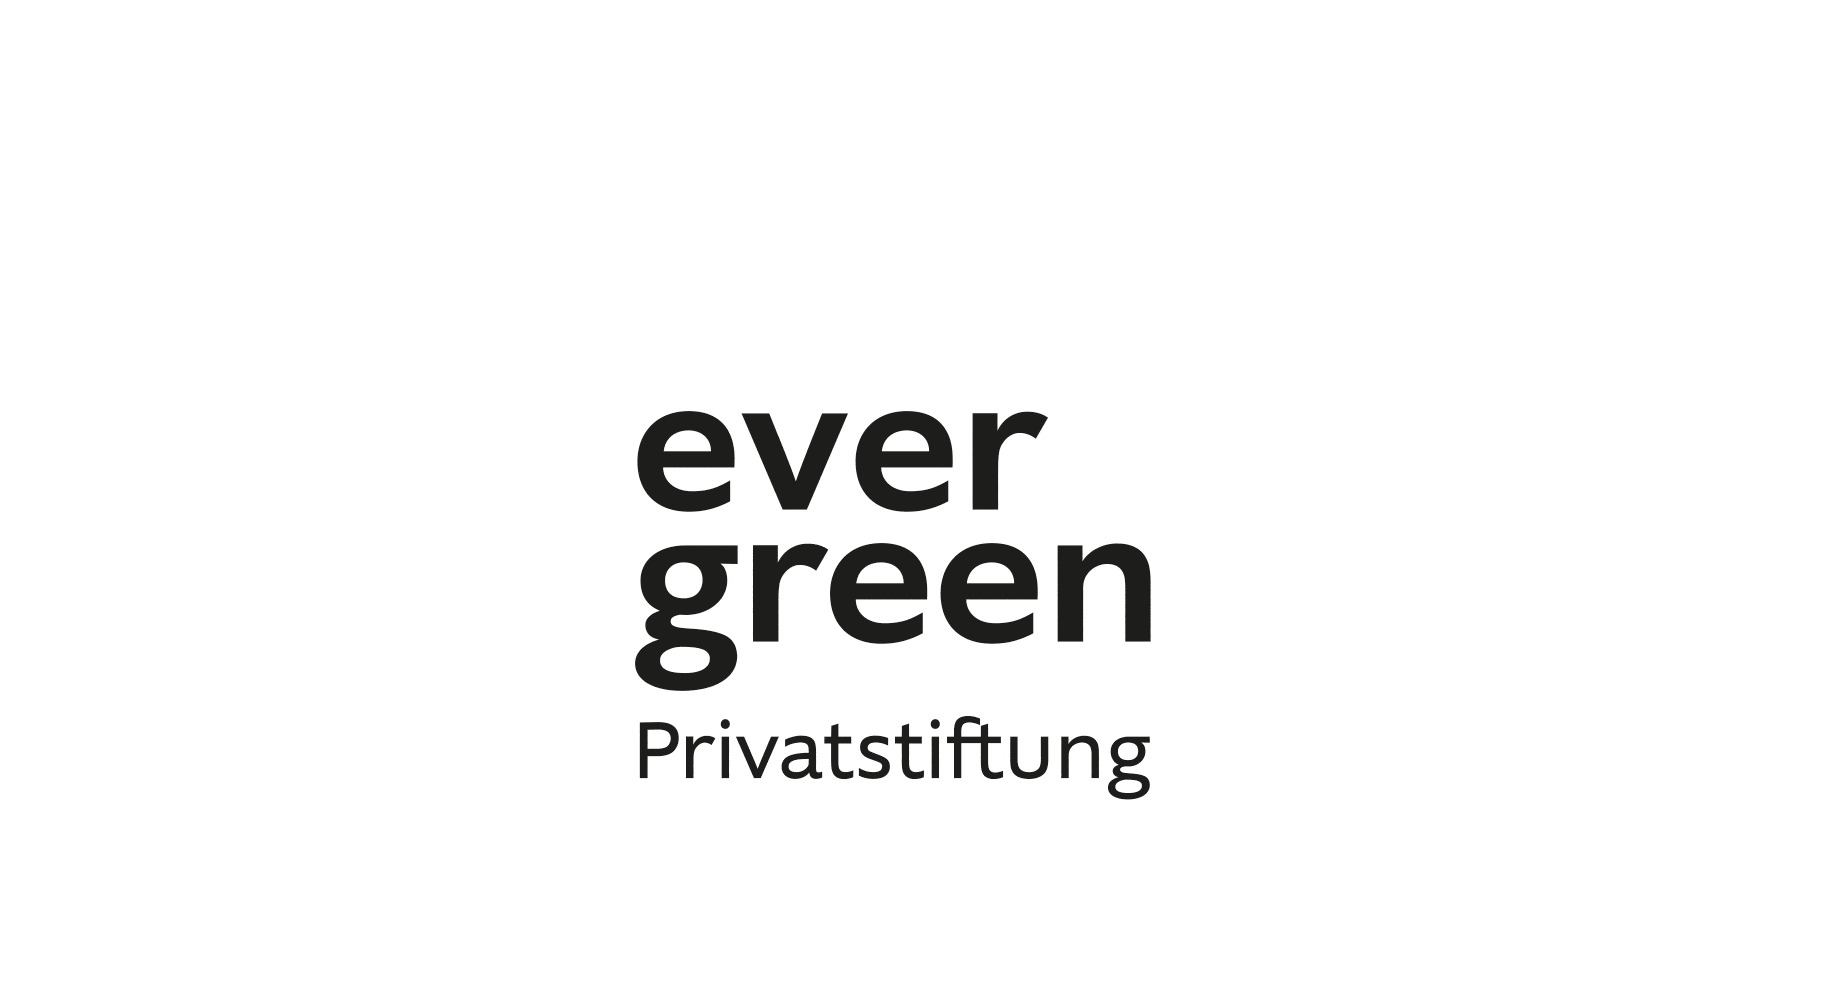 Gif: Evergreen logo, auftretende Kreise in blau, gelb, rot violet, wie Regenbogen